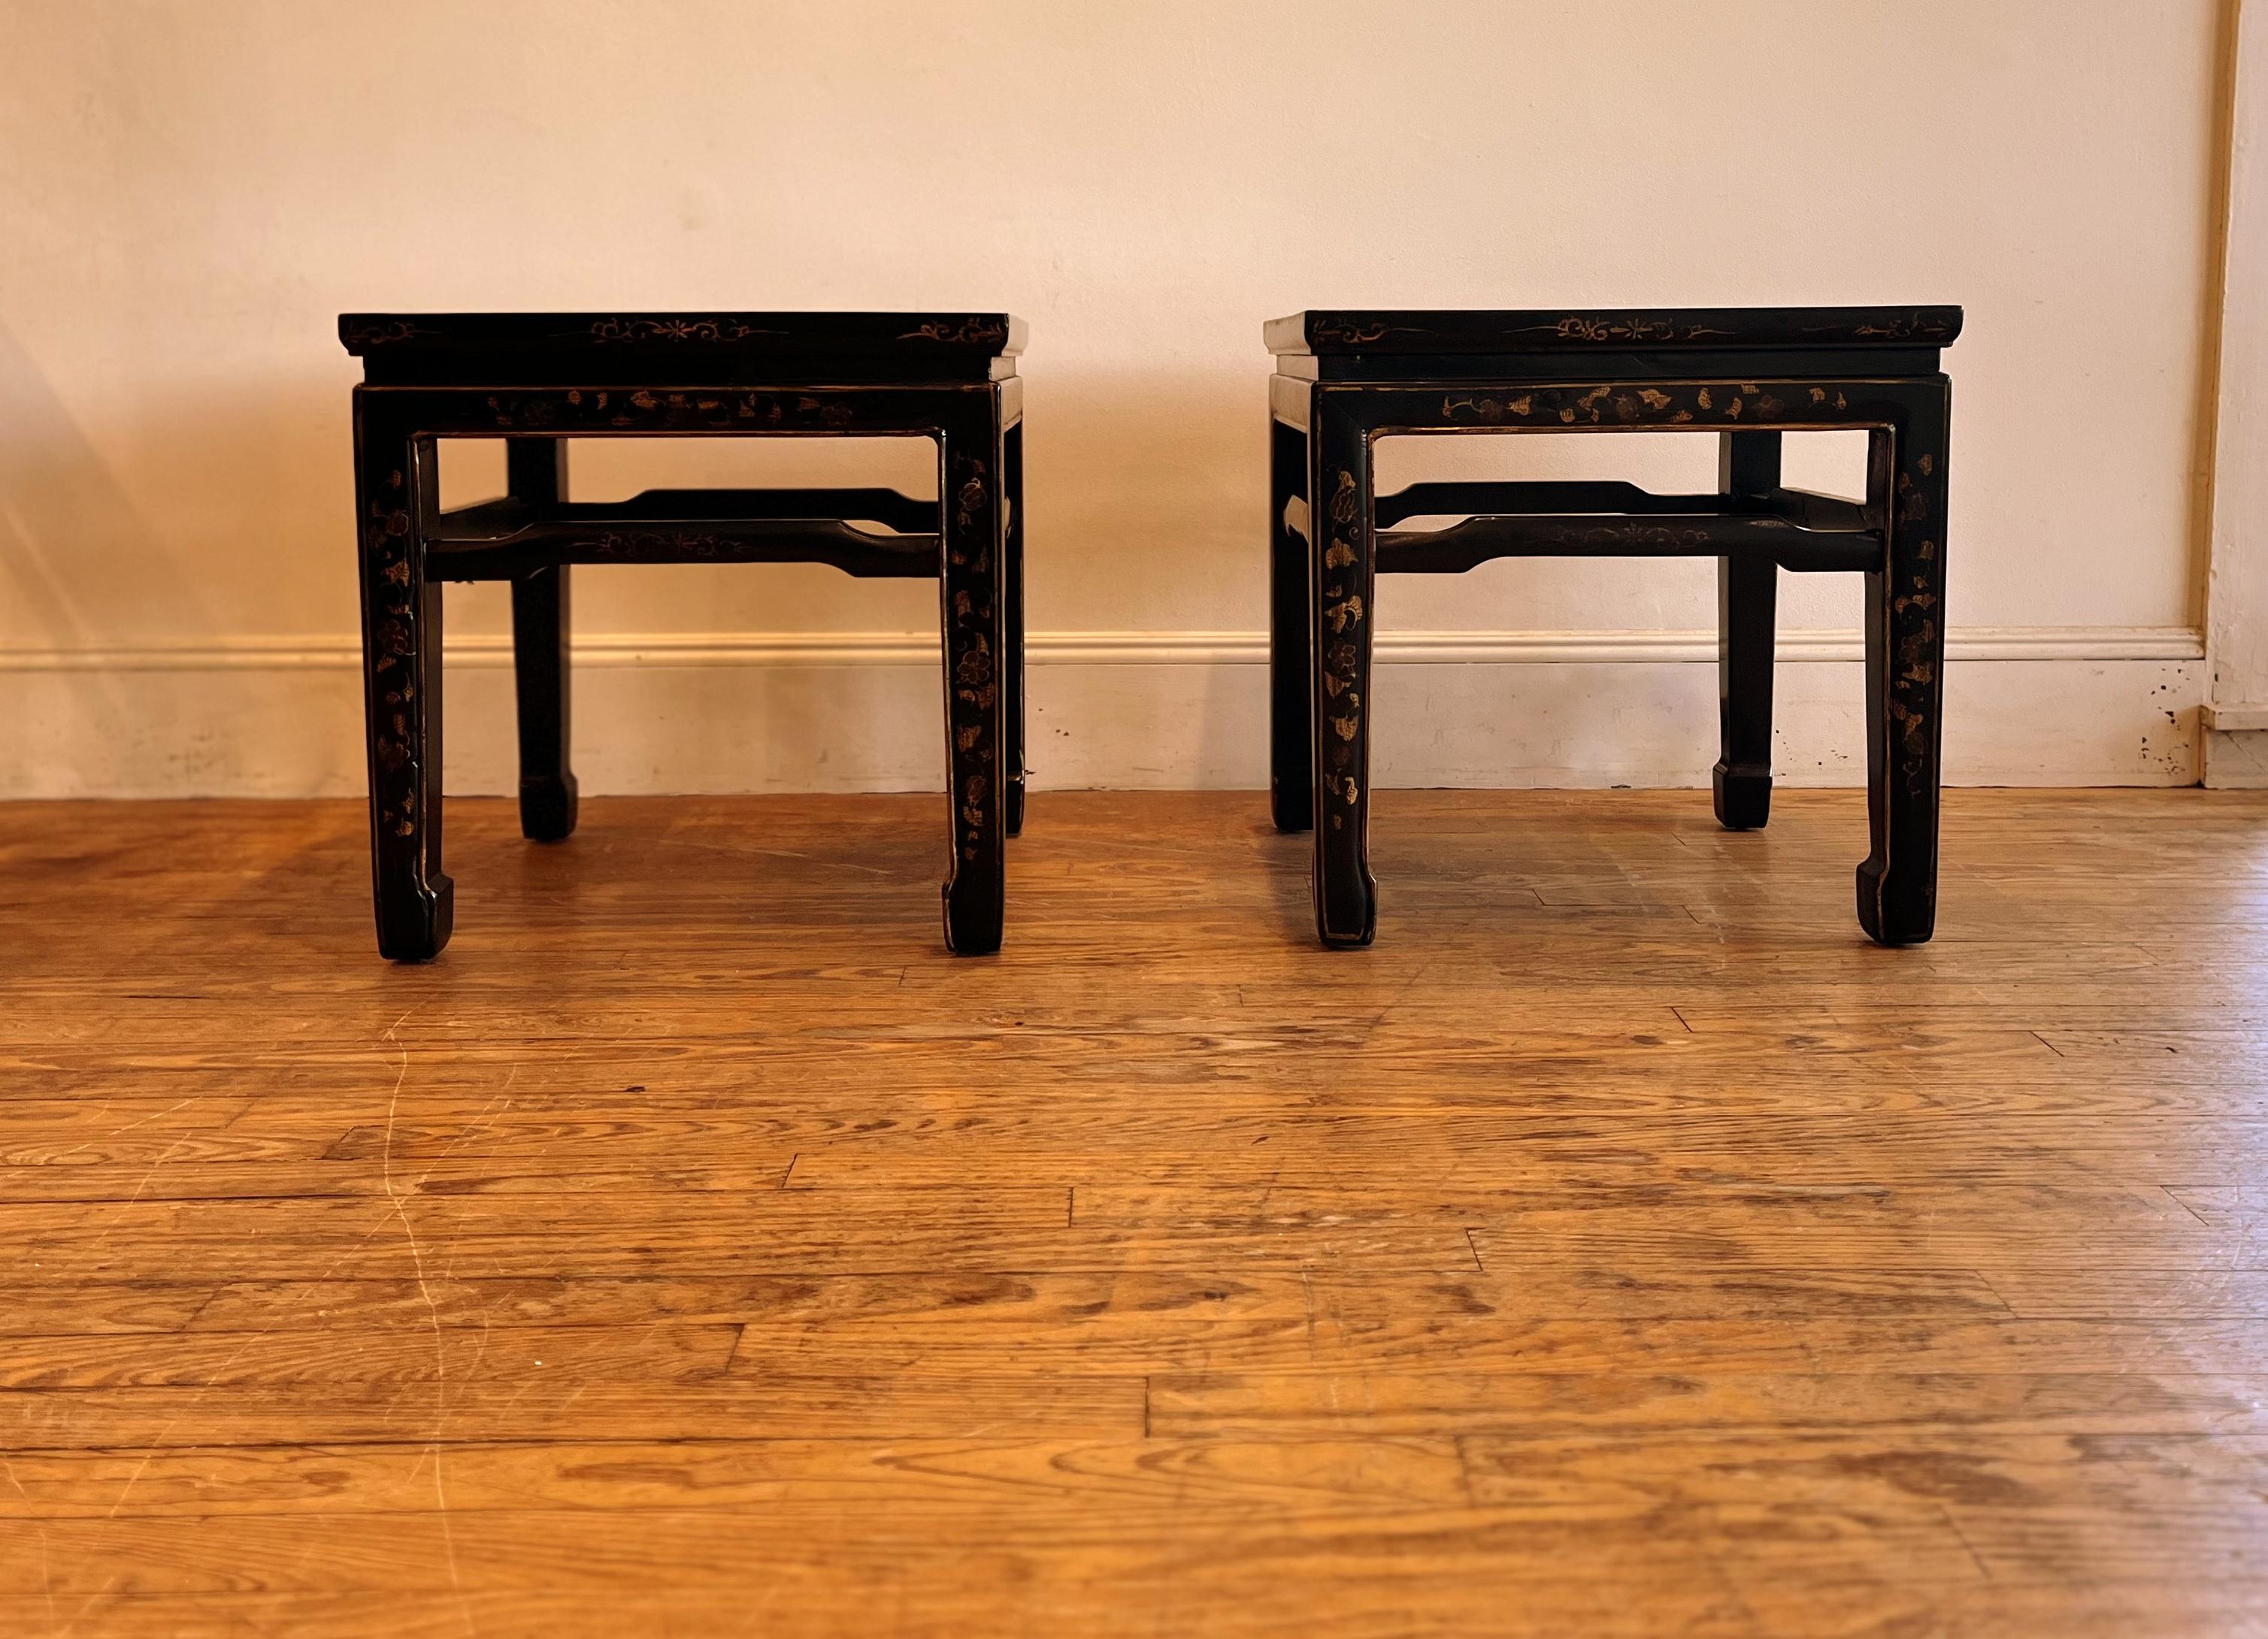 Paar elegante schwarze Lack quadratische Tische mit vergoldeten Motiv, schöne Form und Farbe, Wir führen feine Qualität Möbel mit eleganten fertig und wurde viele Male in 